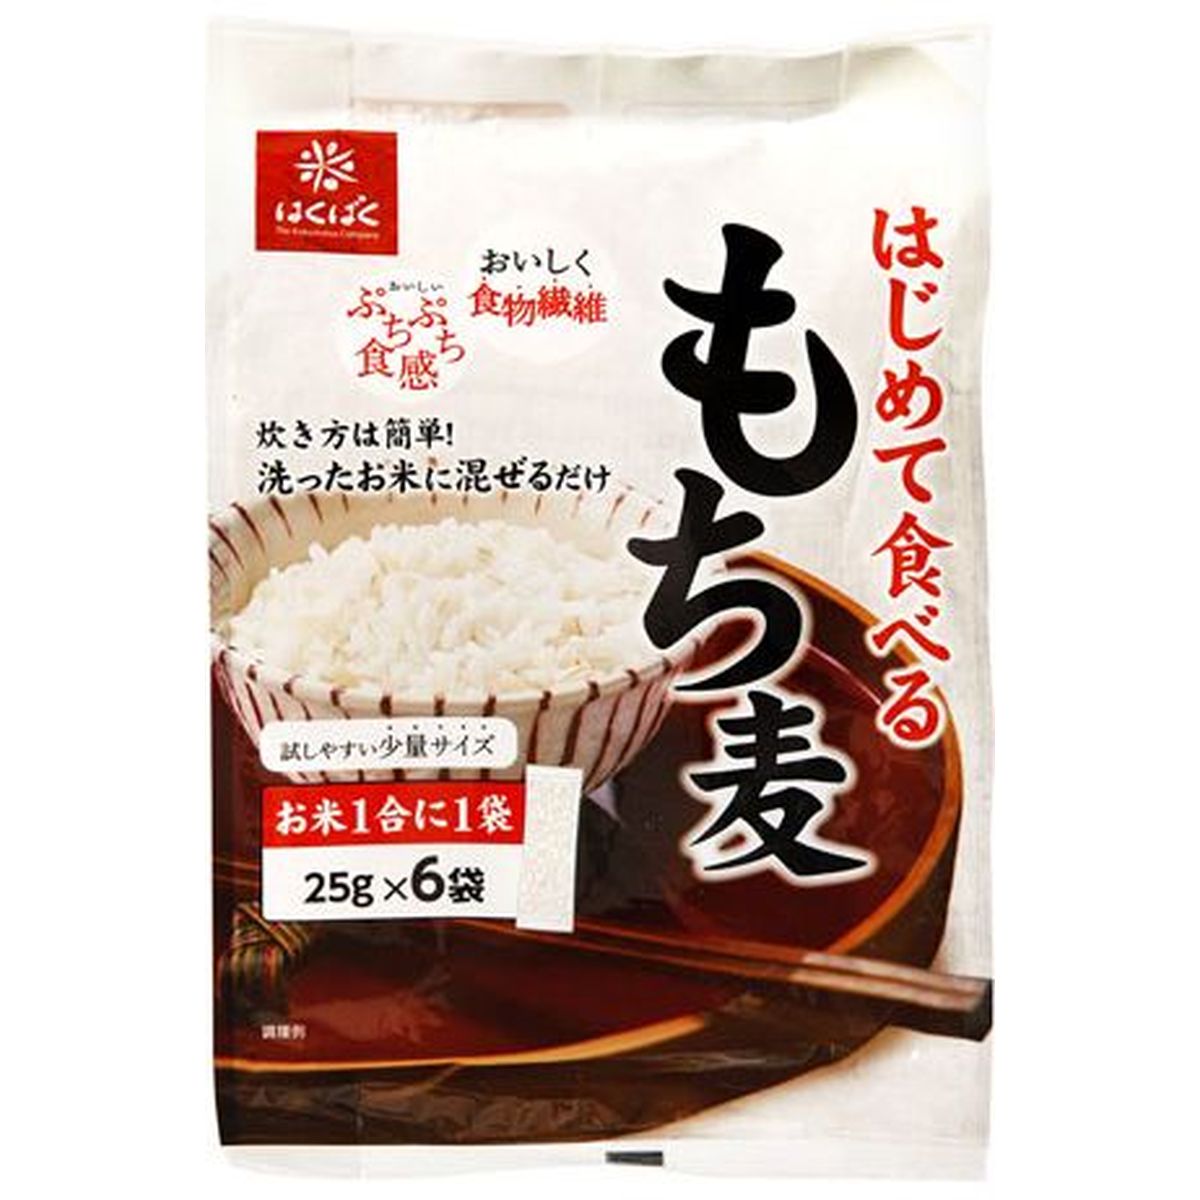 【6個入リ】ハクバク ハジメテ食ベルモチ麦 150g